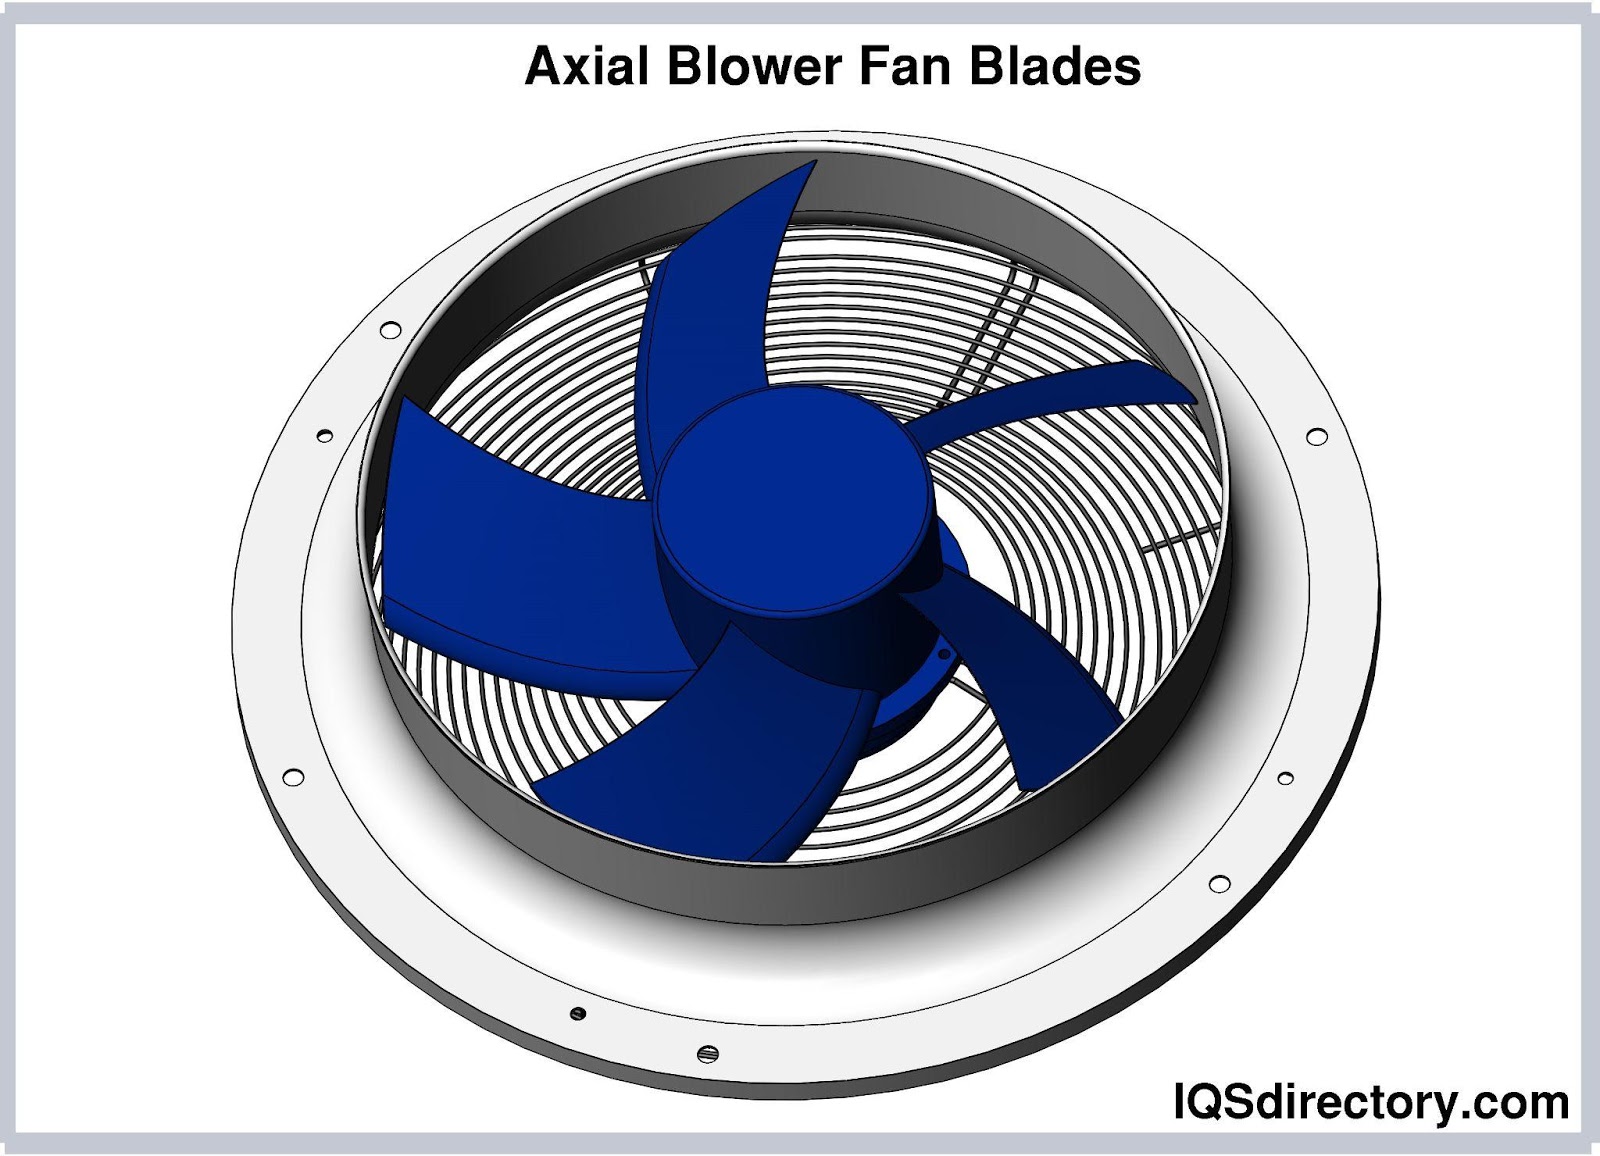 Axial Blower Fan Blades